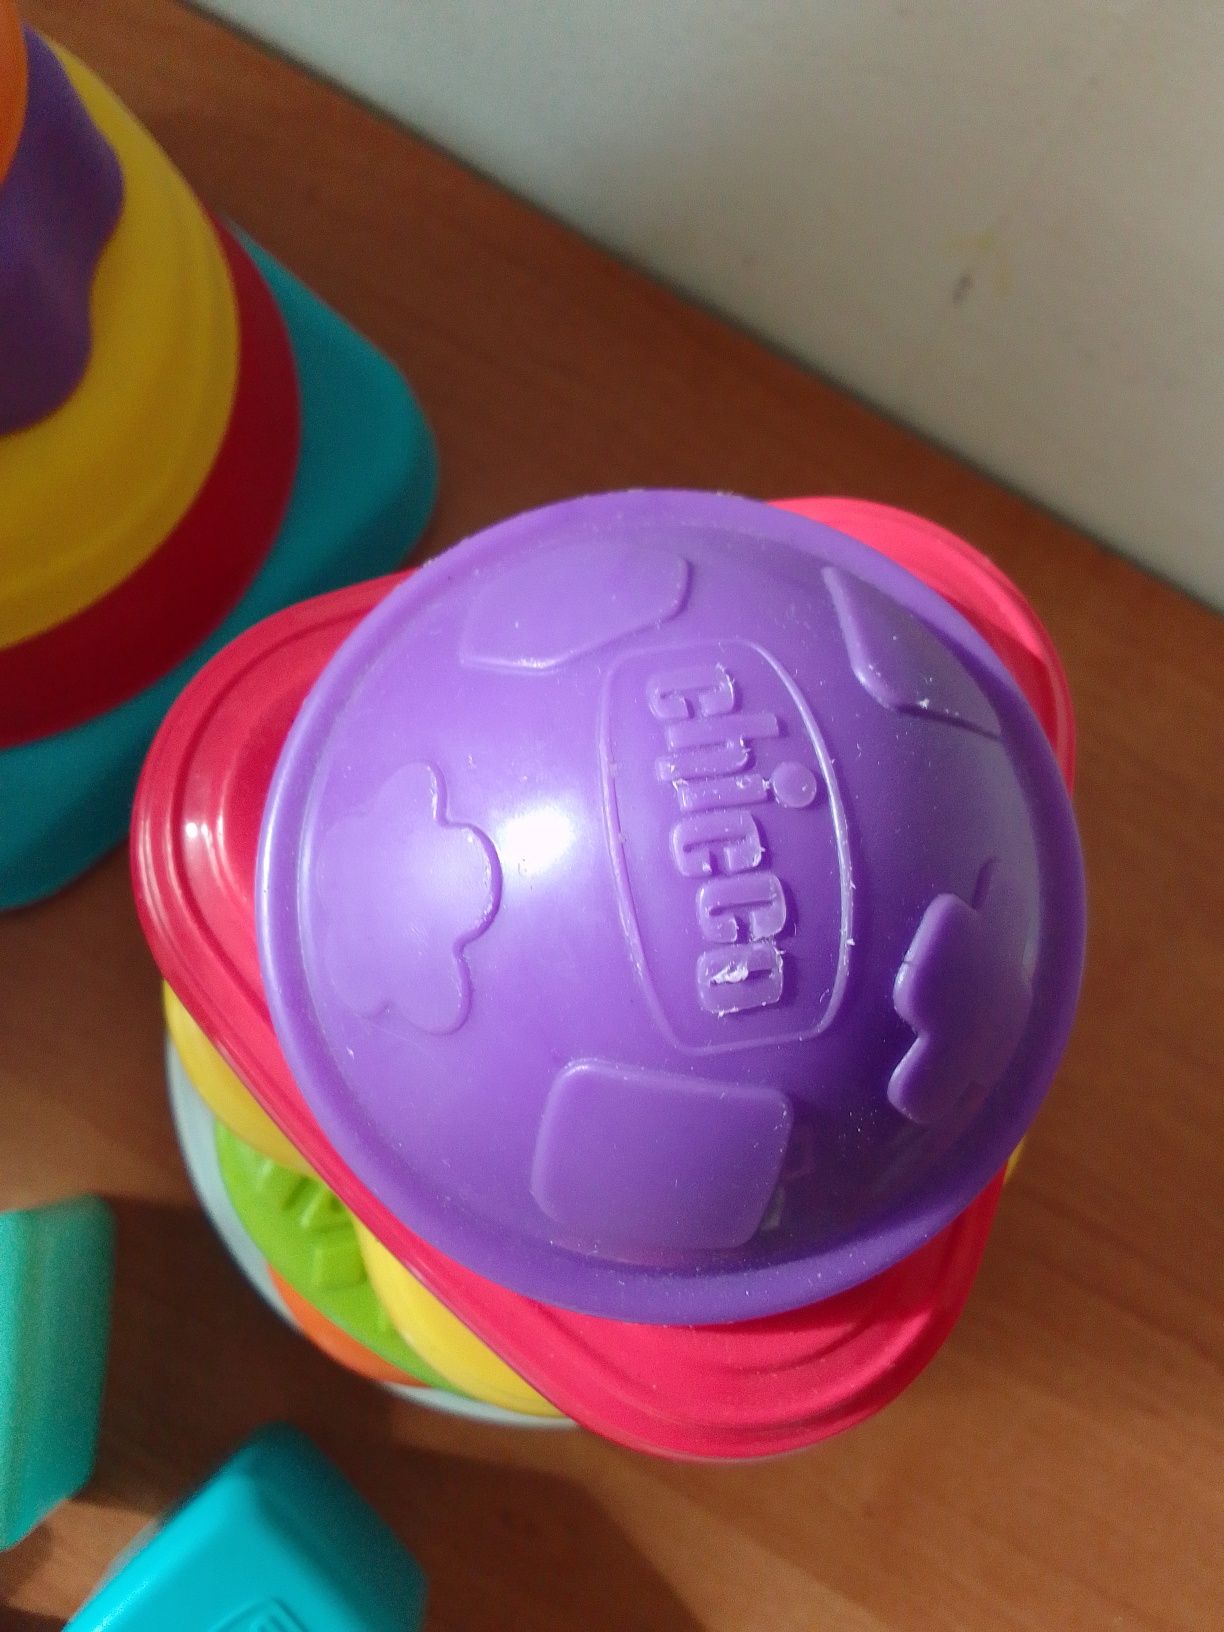 Chicco zabawki edukacyjne sorter wieże silikonowe i plastikowe kolory